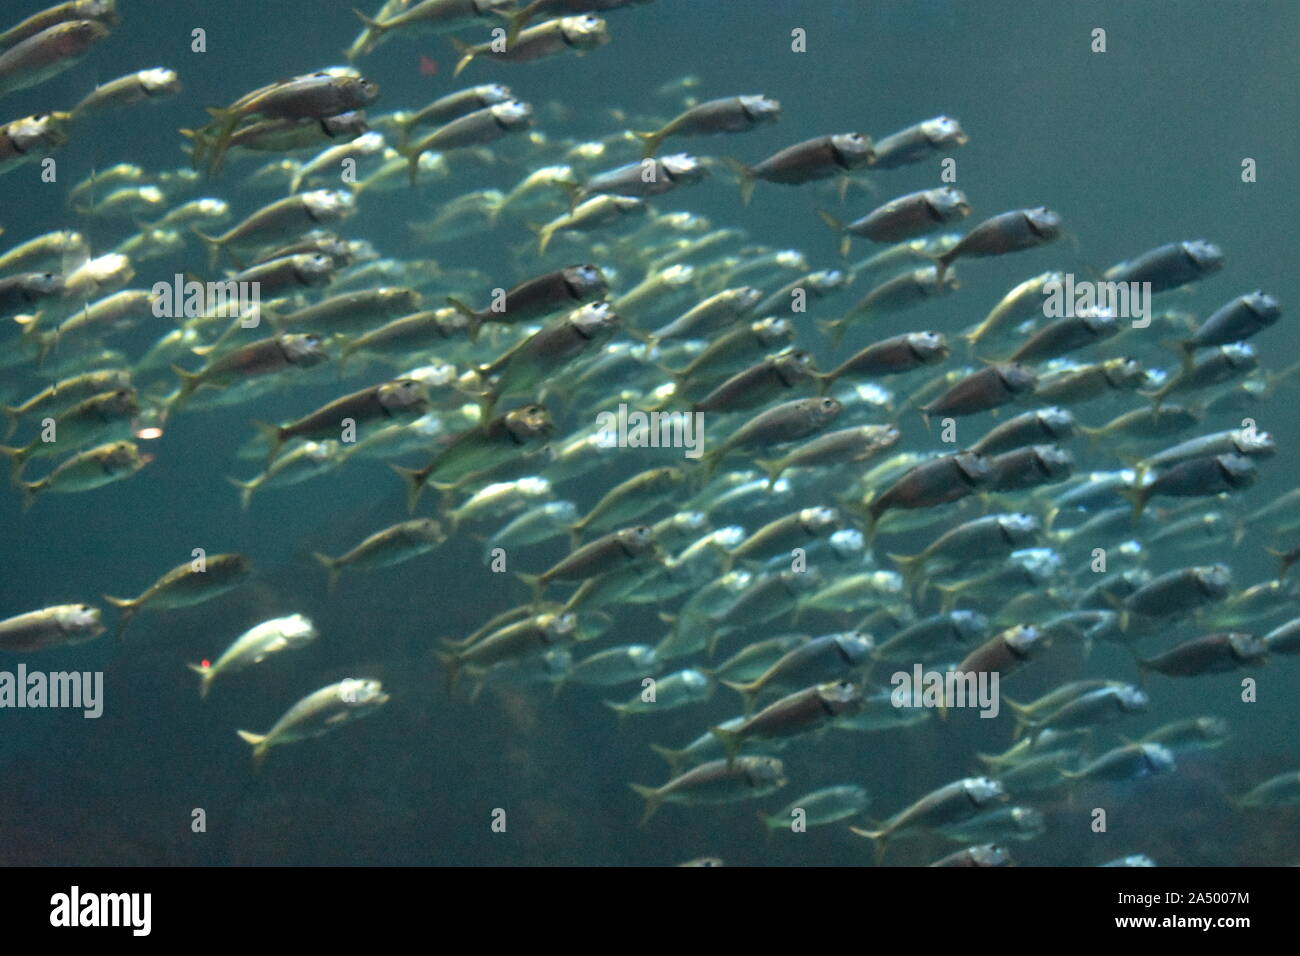 0041 Fische schwimmen unter Wasser..JPG Stockfoto